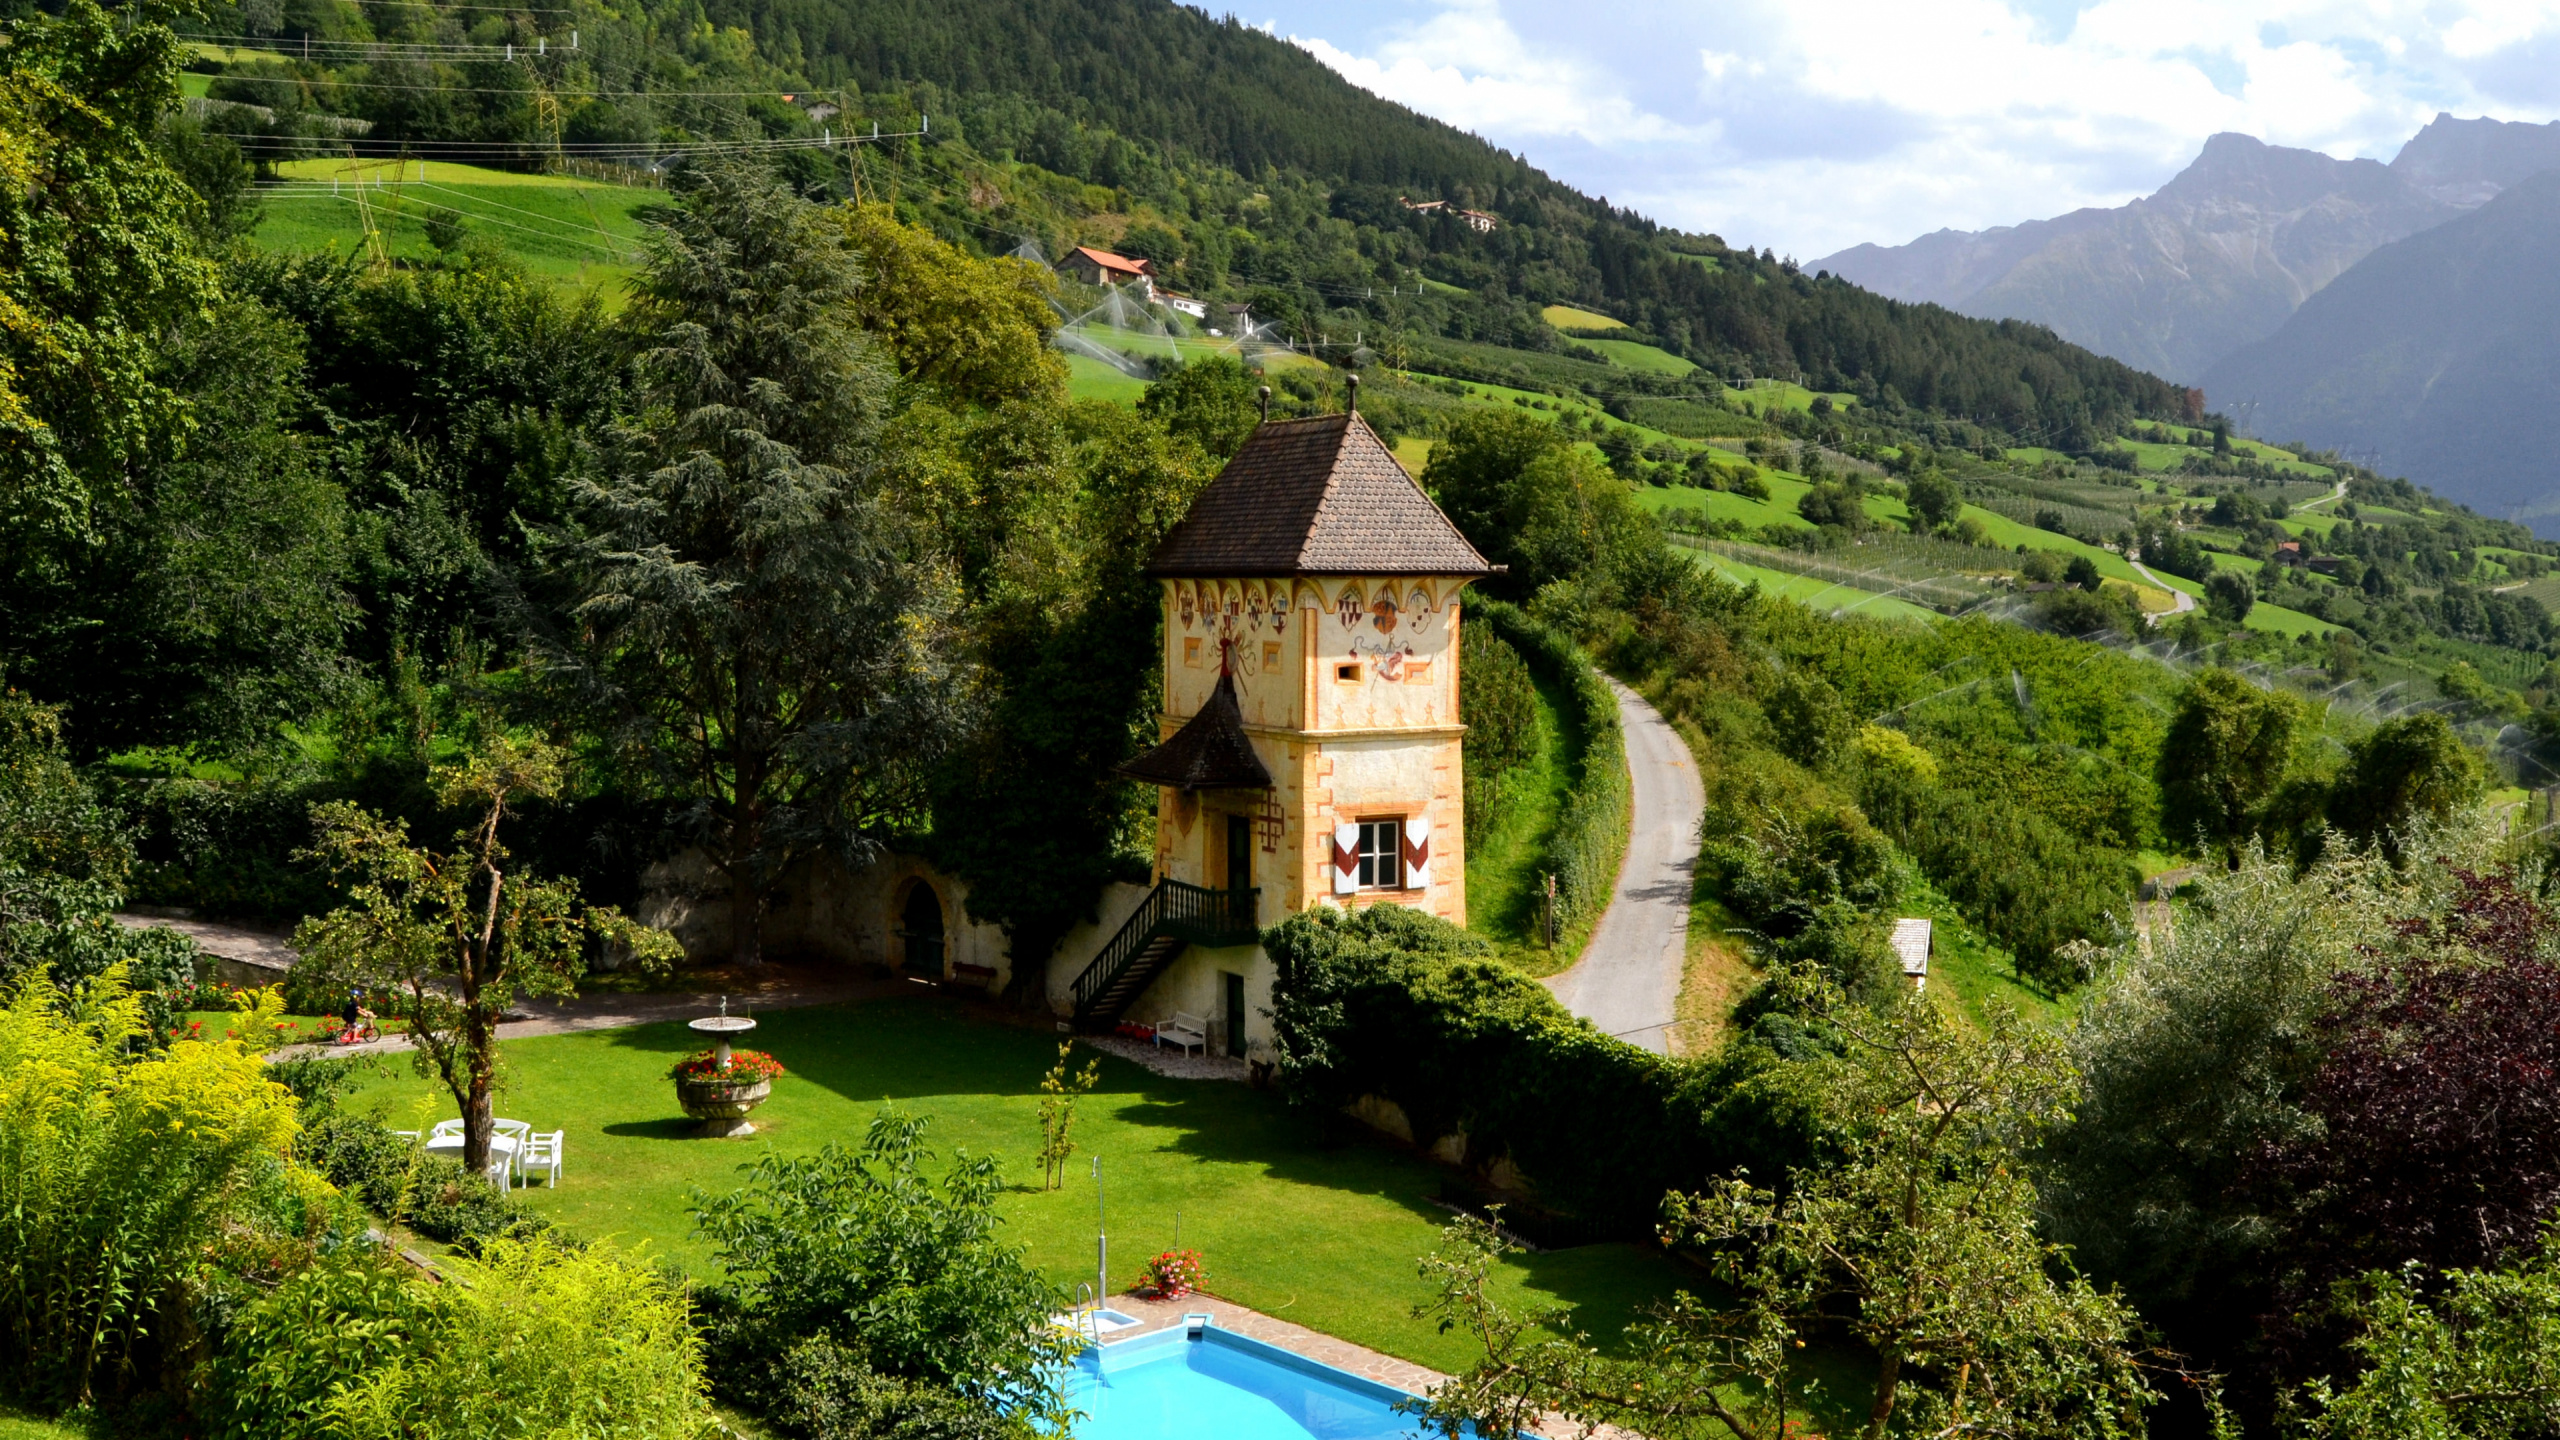 山村, 性质, 安装的风景, 绿色的, 植被 壁纸 2560x1440 允许